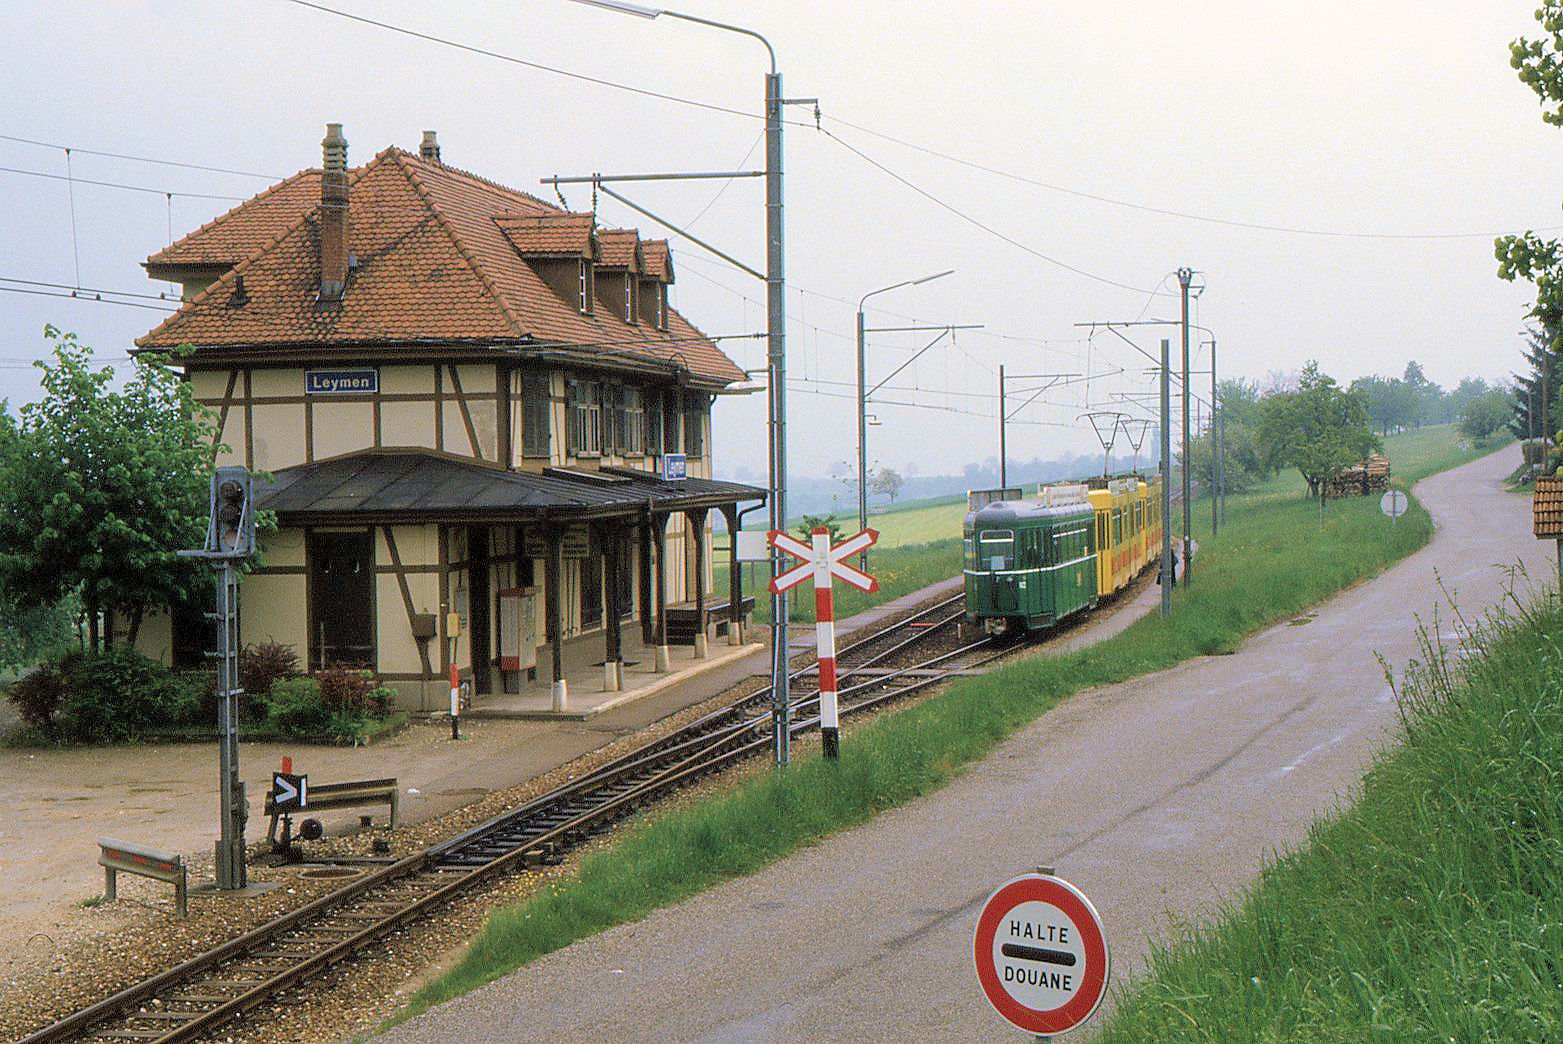 Im Anschluss an Stefans schöne Bilder der französischen Station Leymen hier noch eine ältere Aufnahme:  Halte, Douane  - Grenze! Ein Tramzug der damaligen Linie 17 mit BLT Be4/6 257 und 237 und dem BVB-Anhänger 1422. 18.Mai 1985 